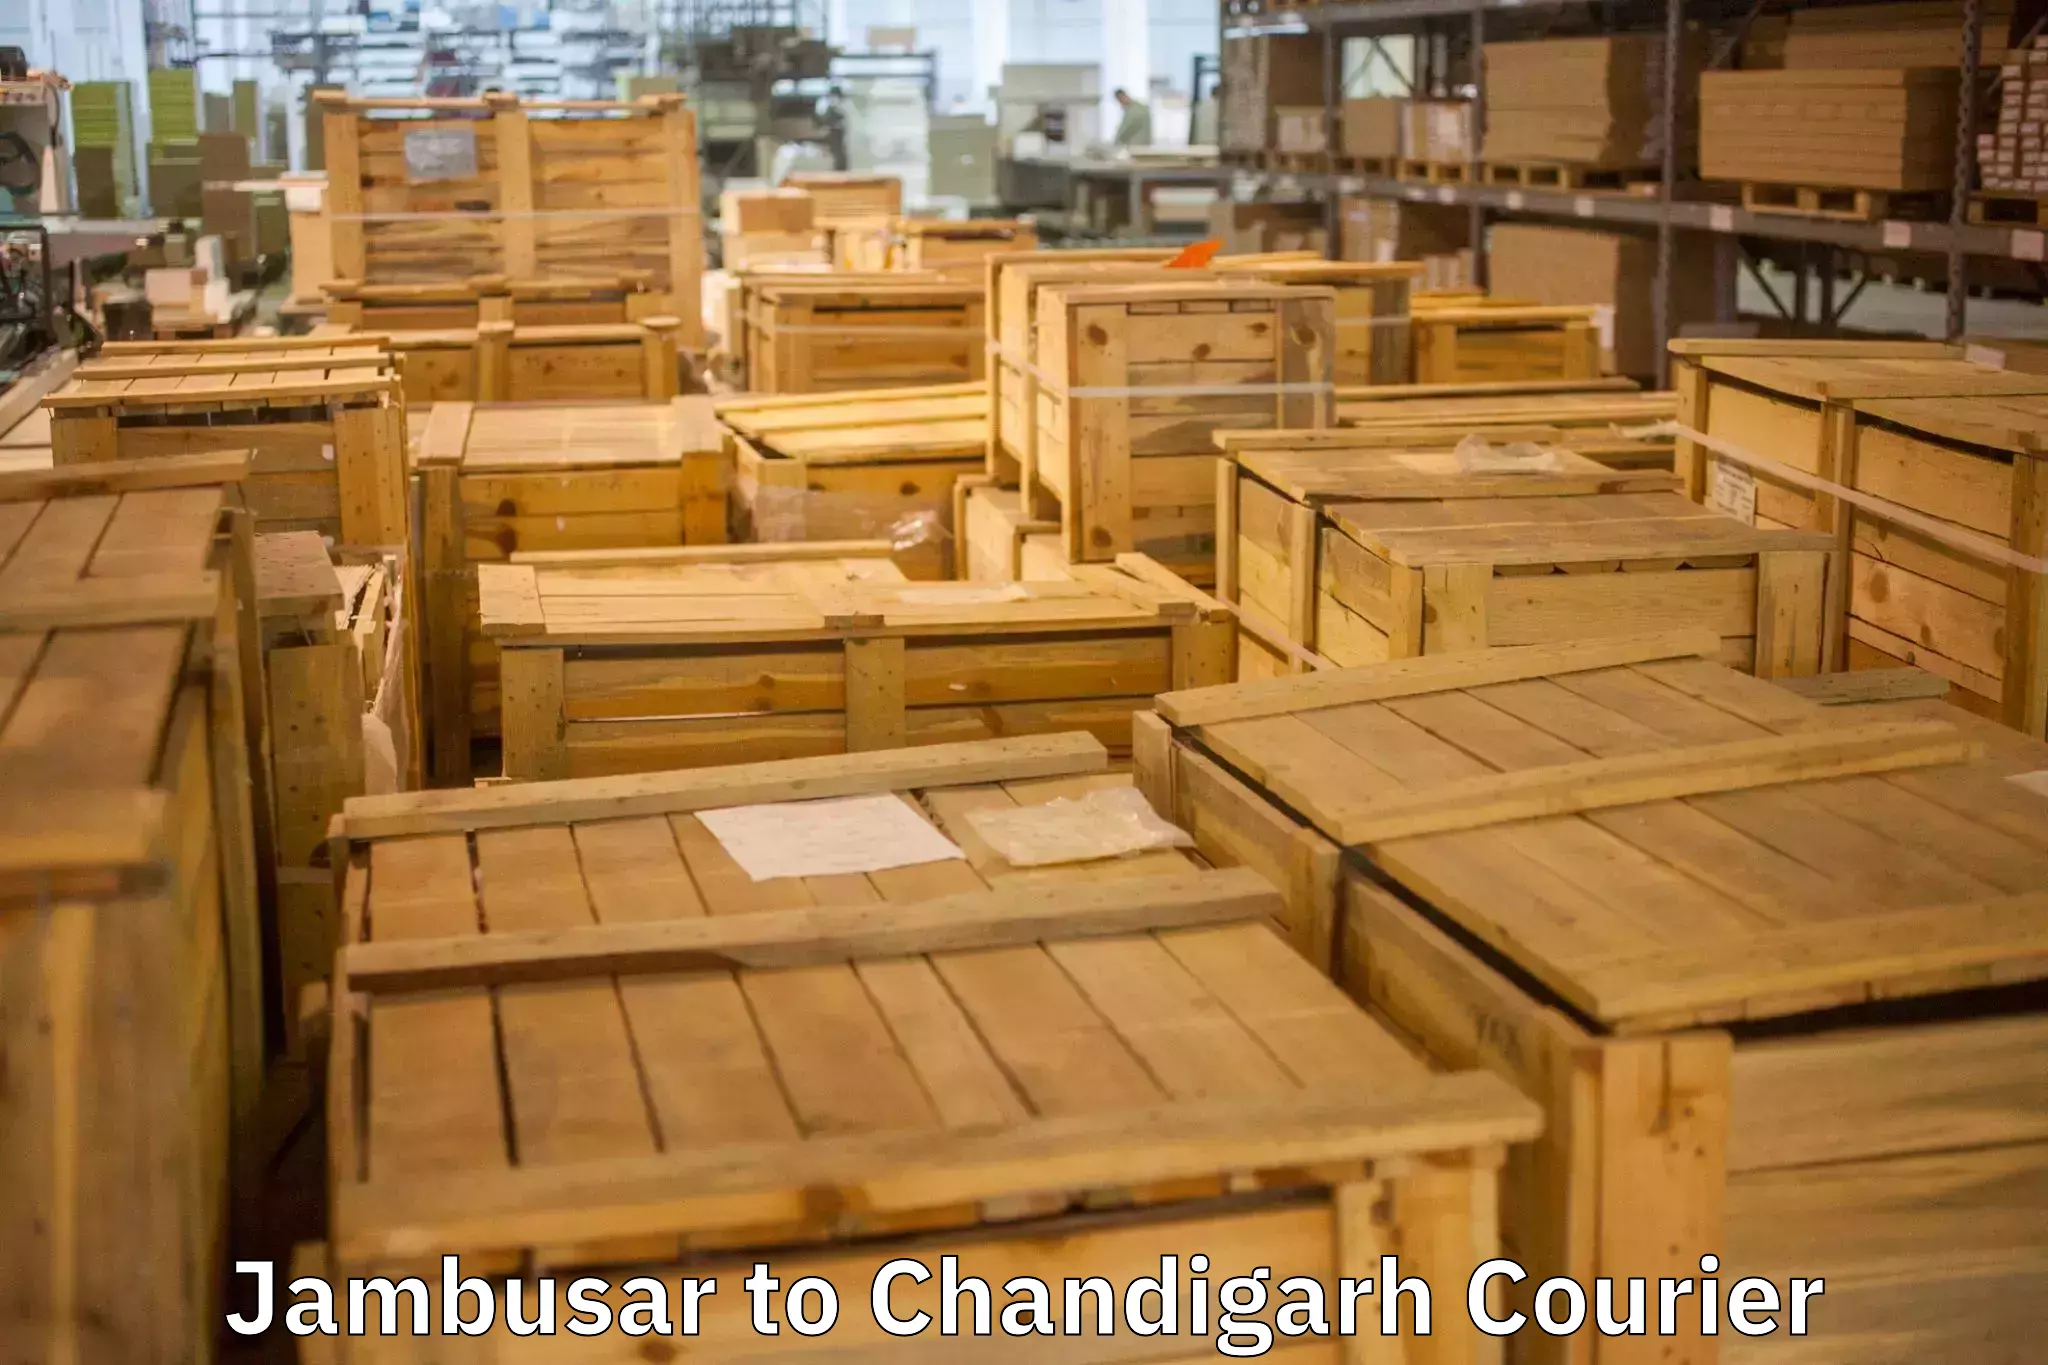 Door-to-door relocation services Jambusar to Chandigarh